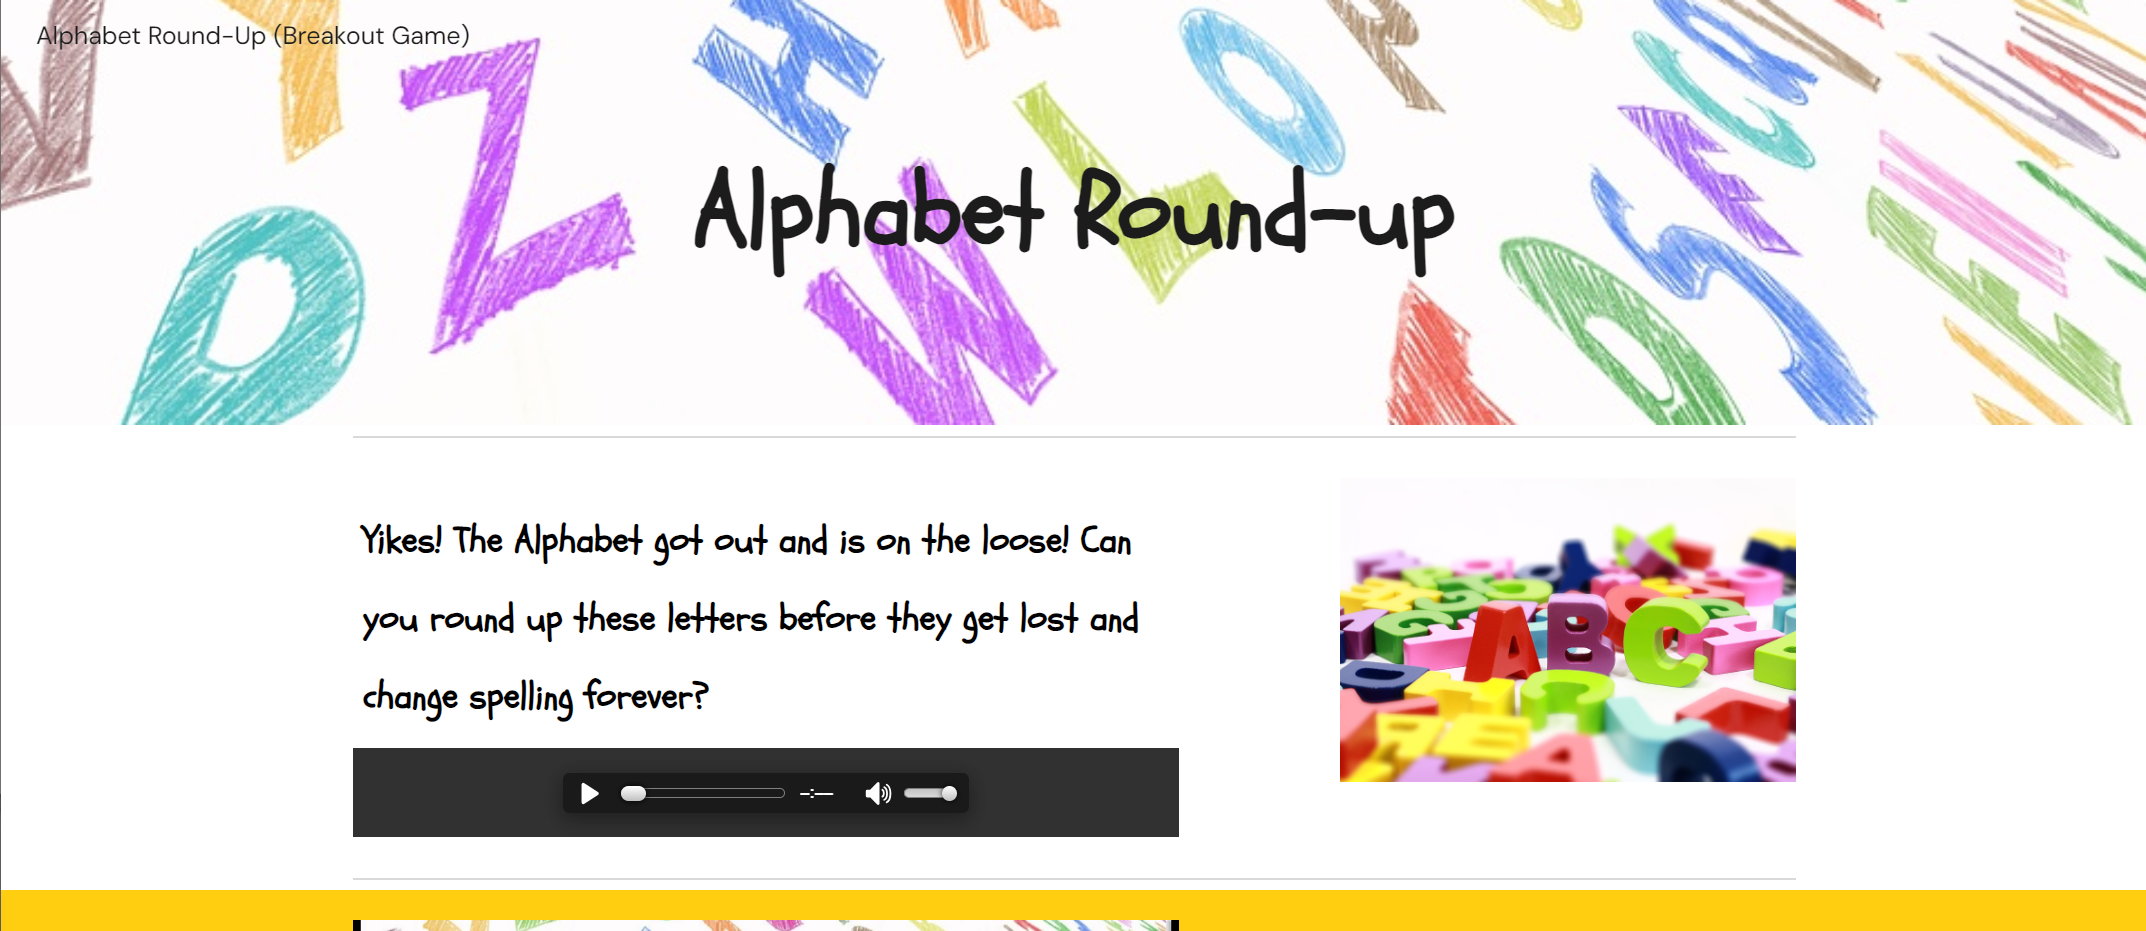 Alphabet Round-Up digital breakout game banner